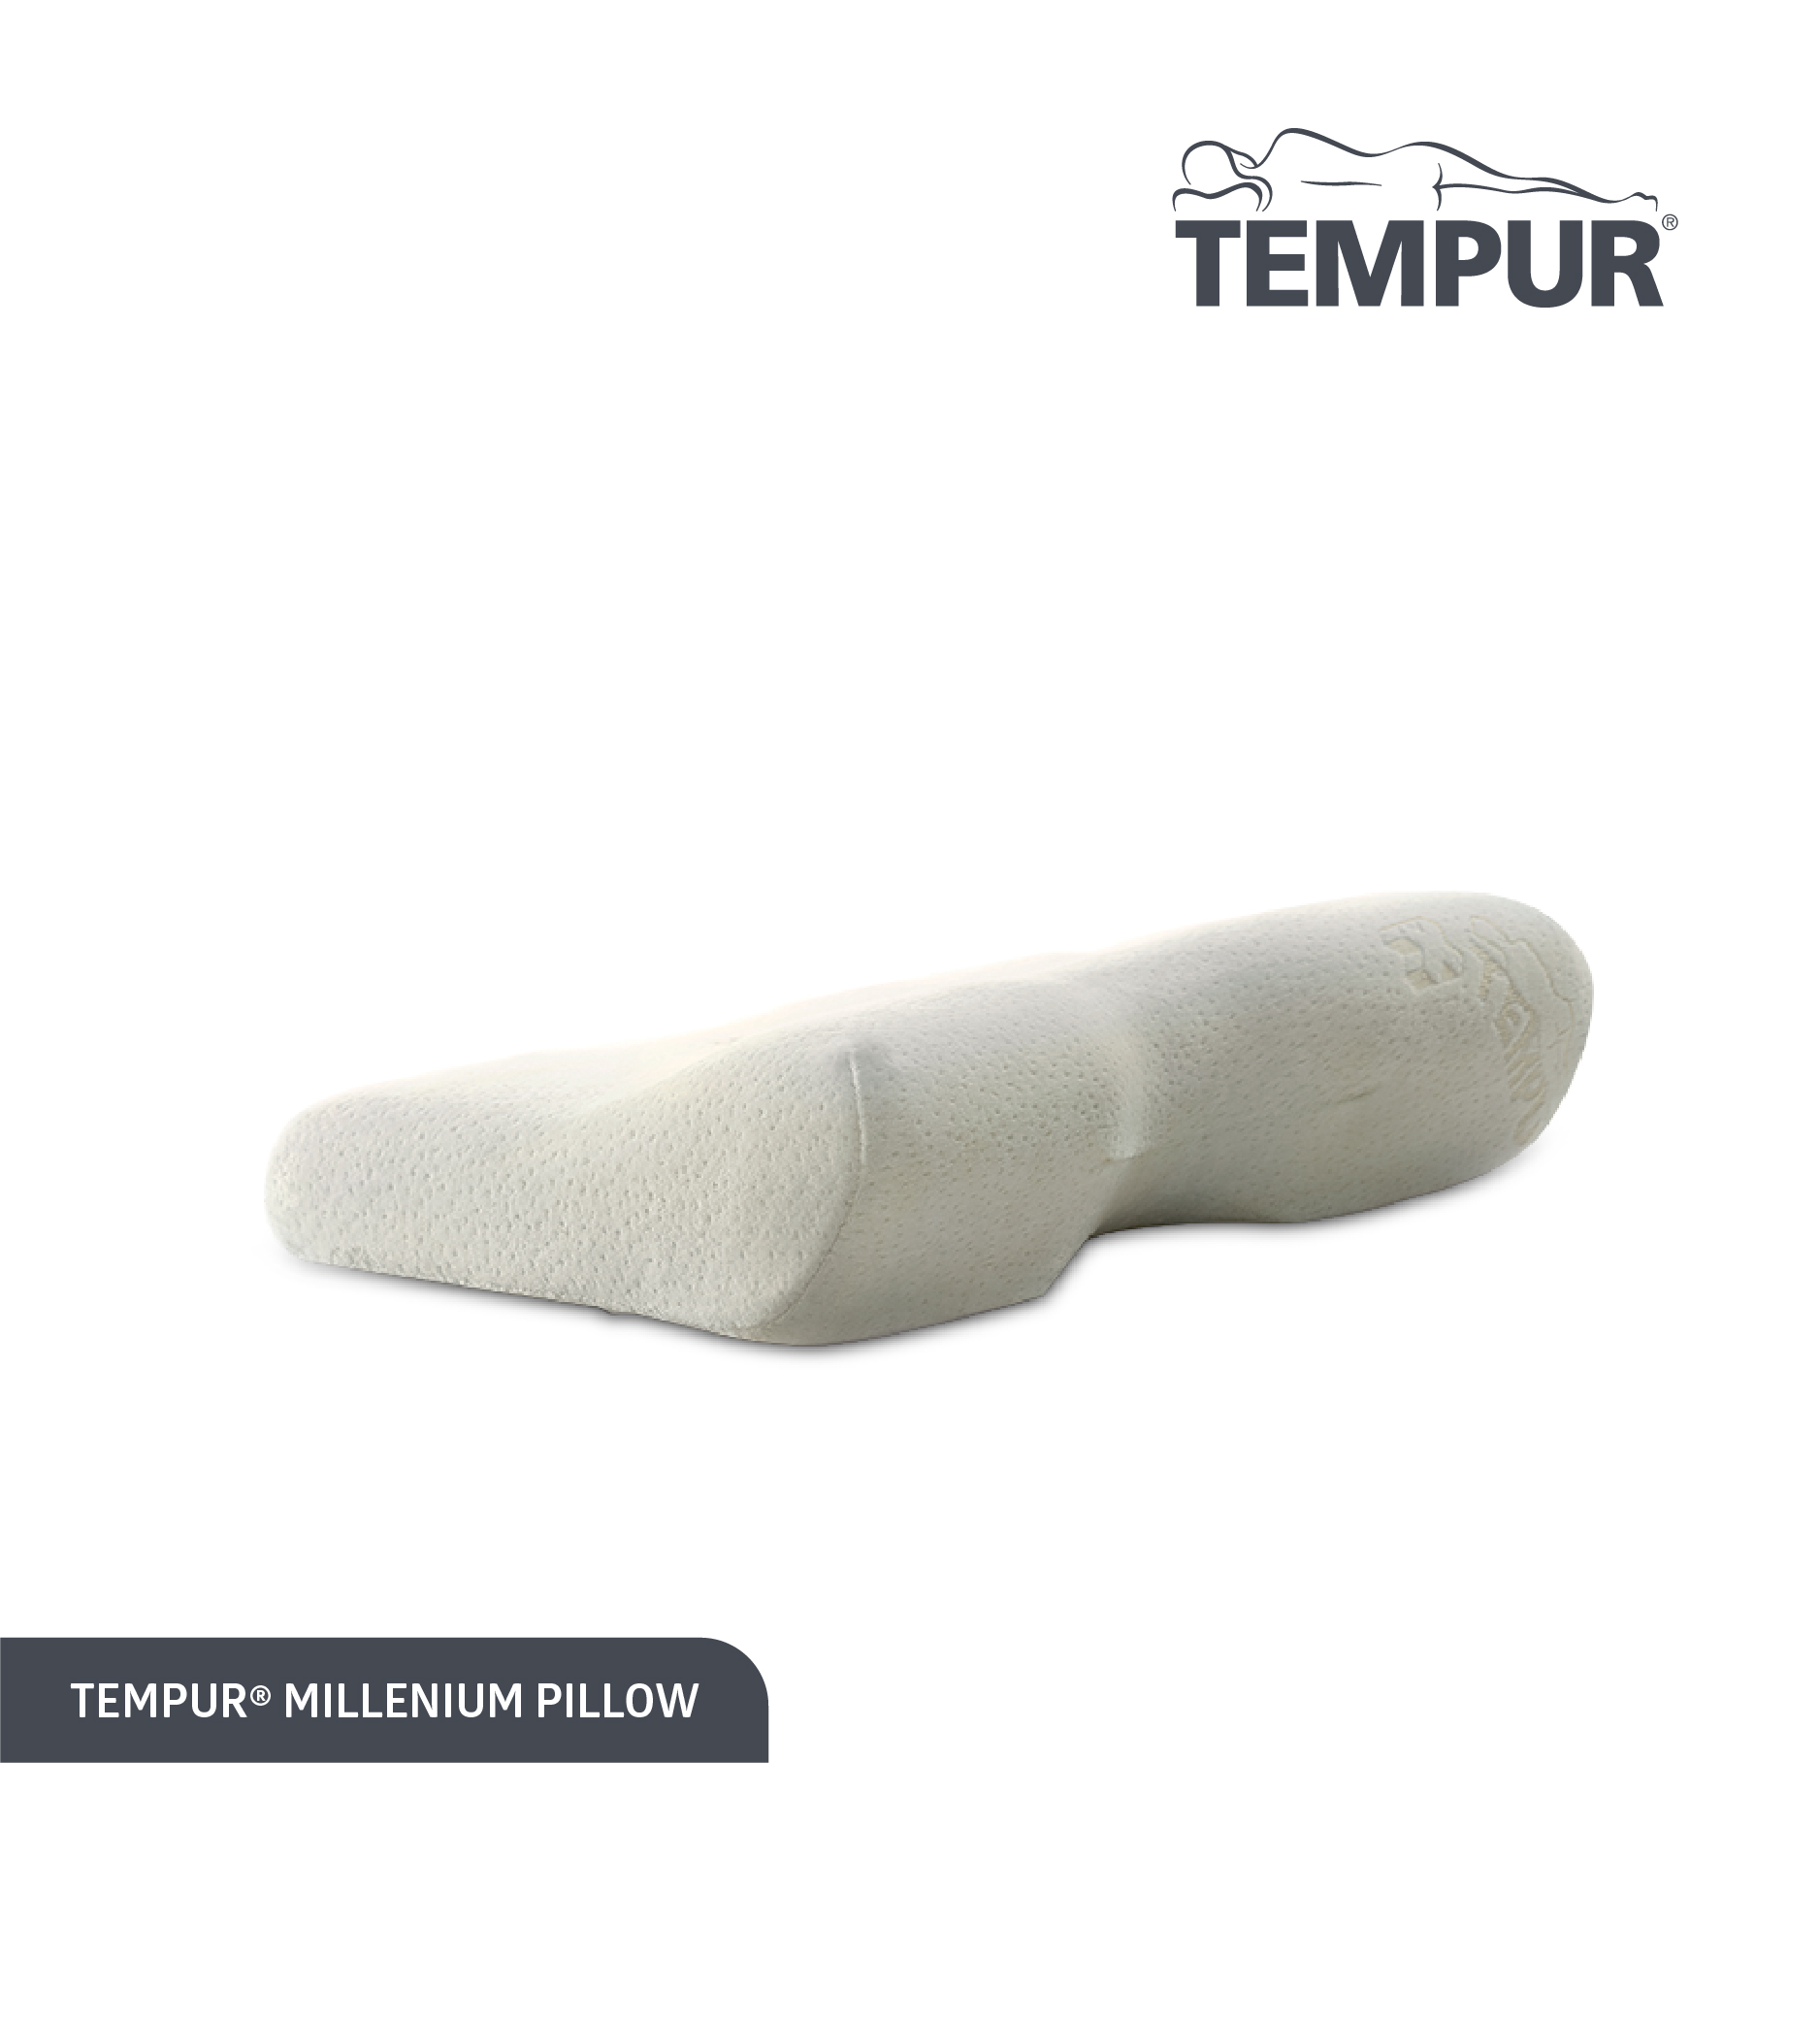 Tempur Millenium Pillow